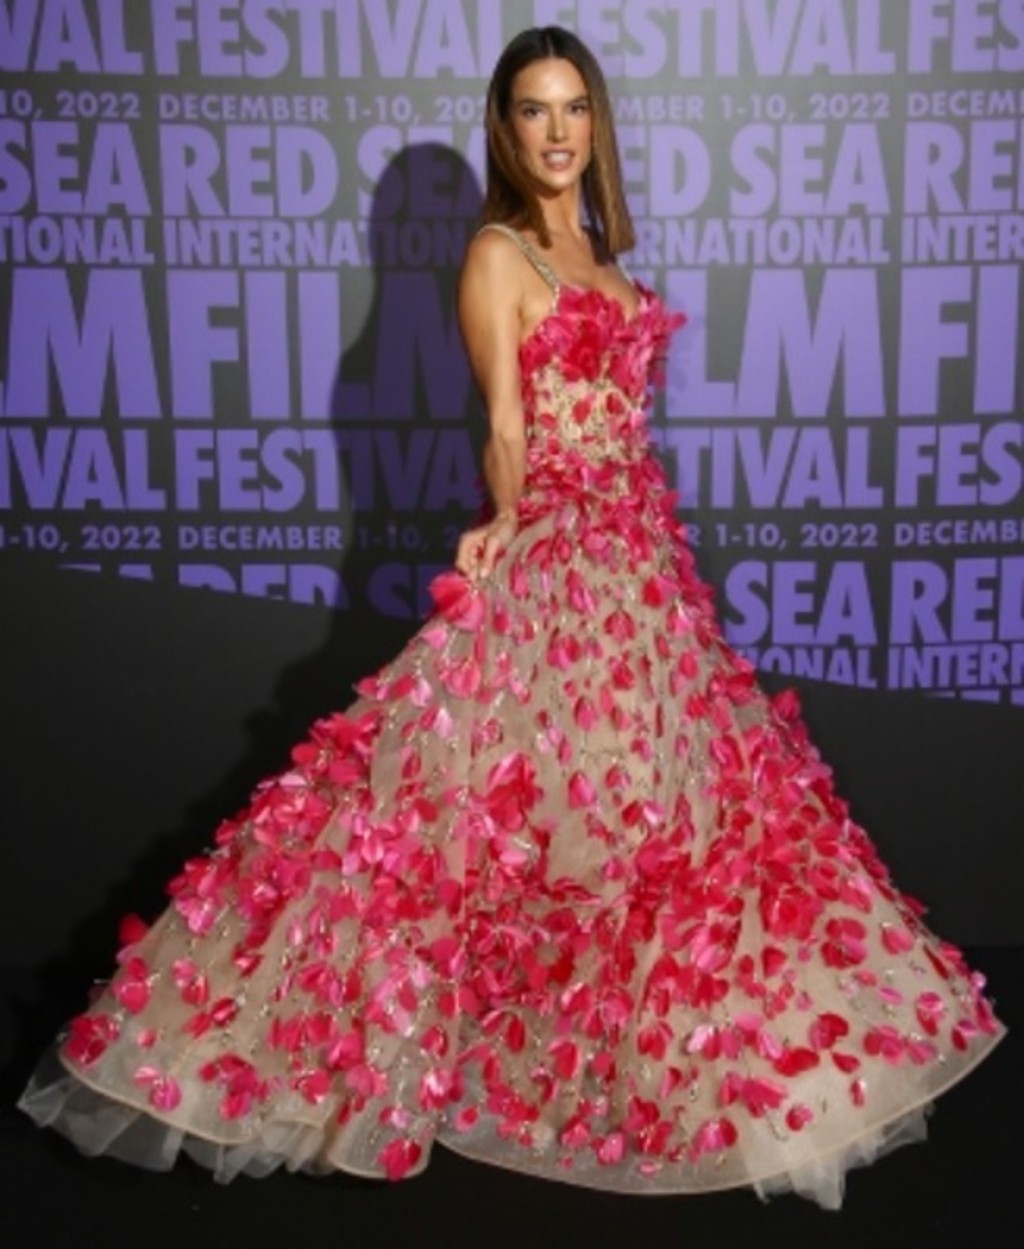 超模Alessandra Ambrosio穿上粉紅立體花裝飾晚裝，出席電影女性晚會。